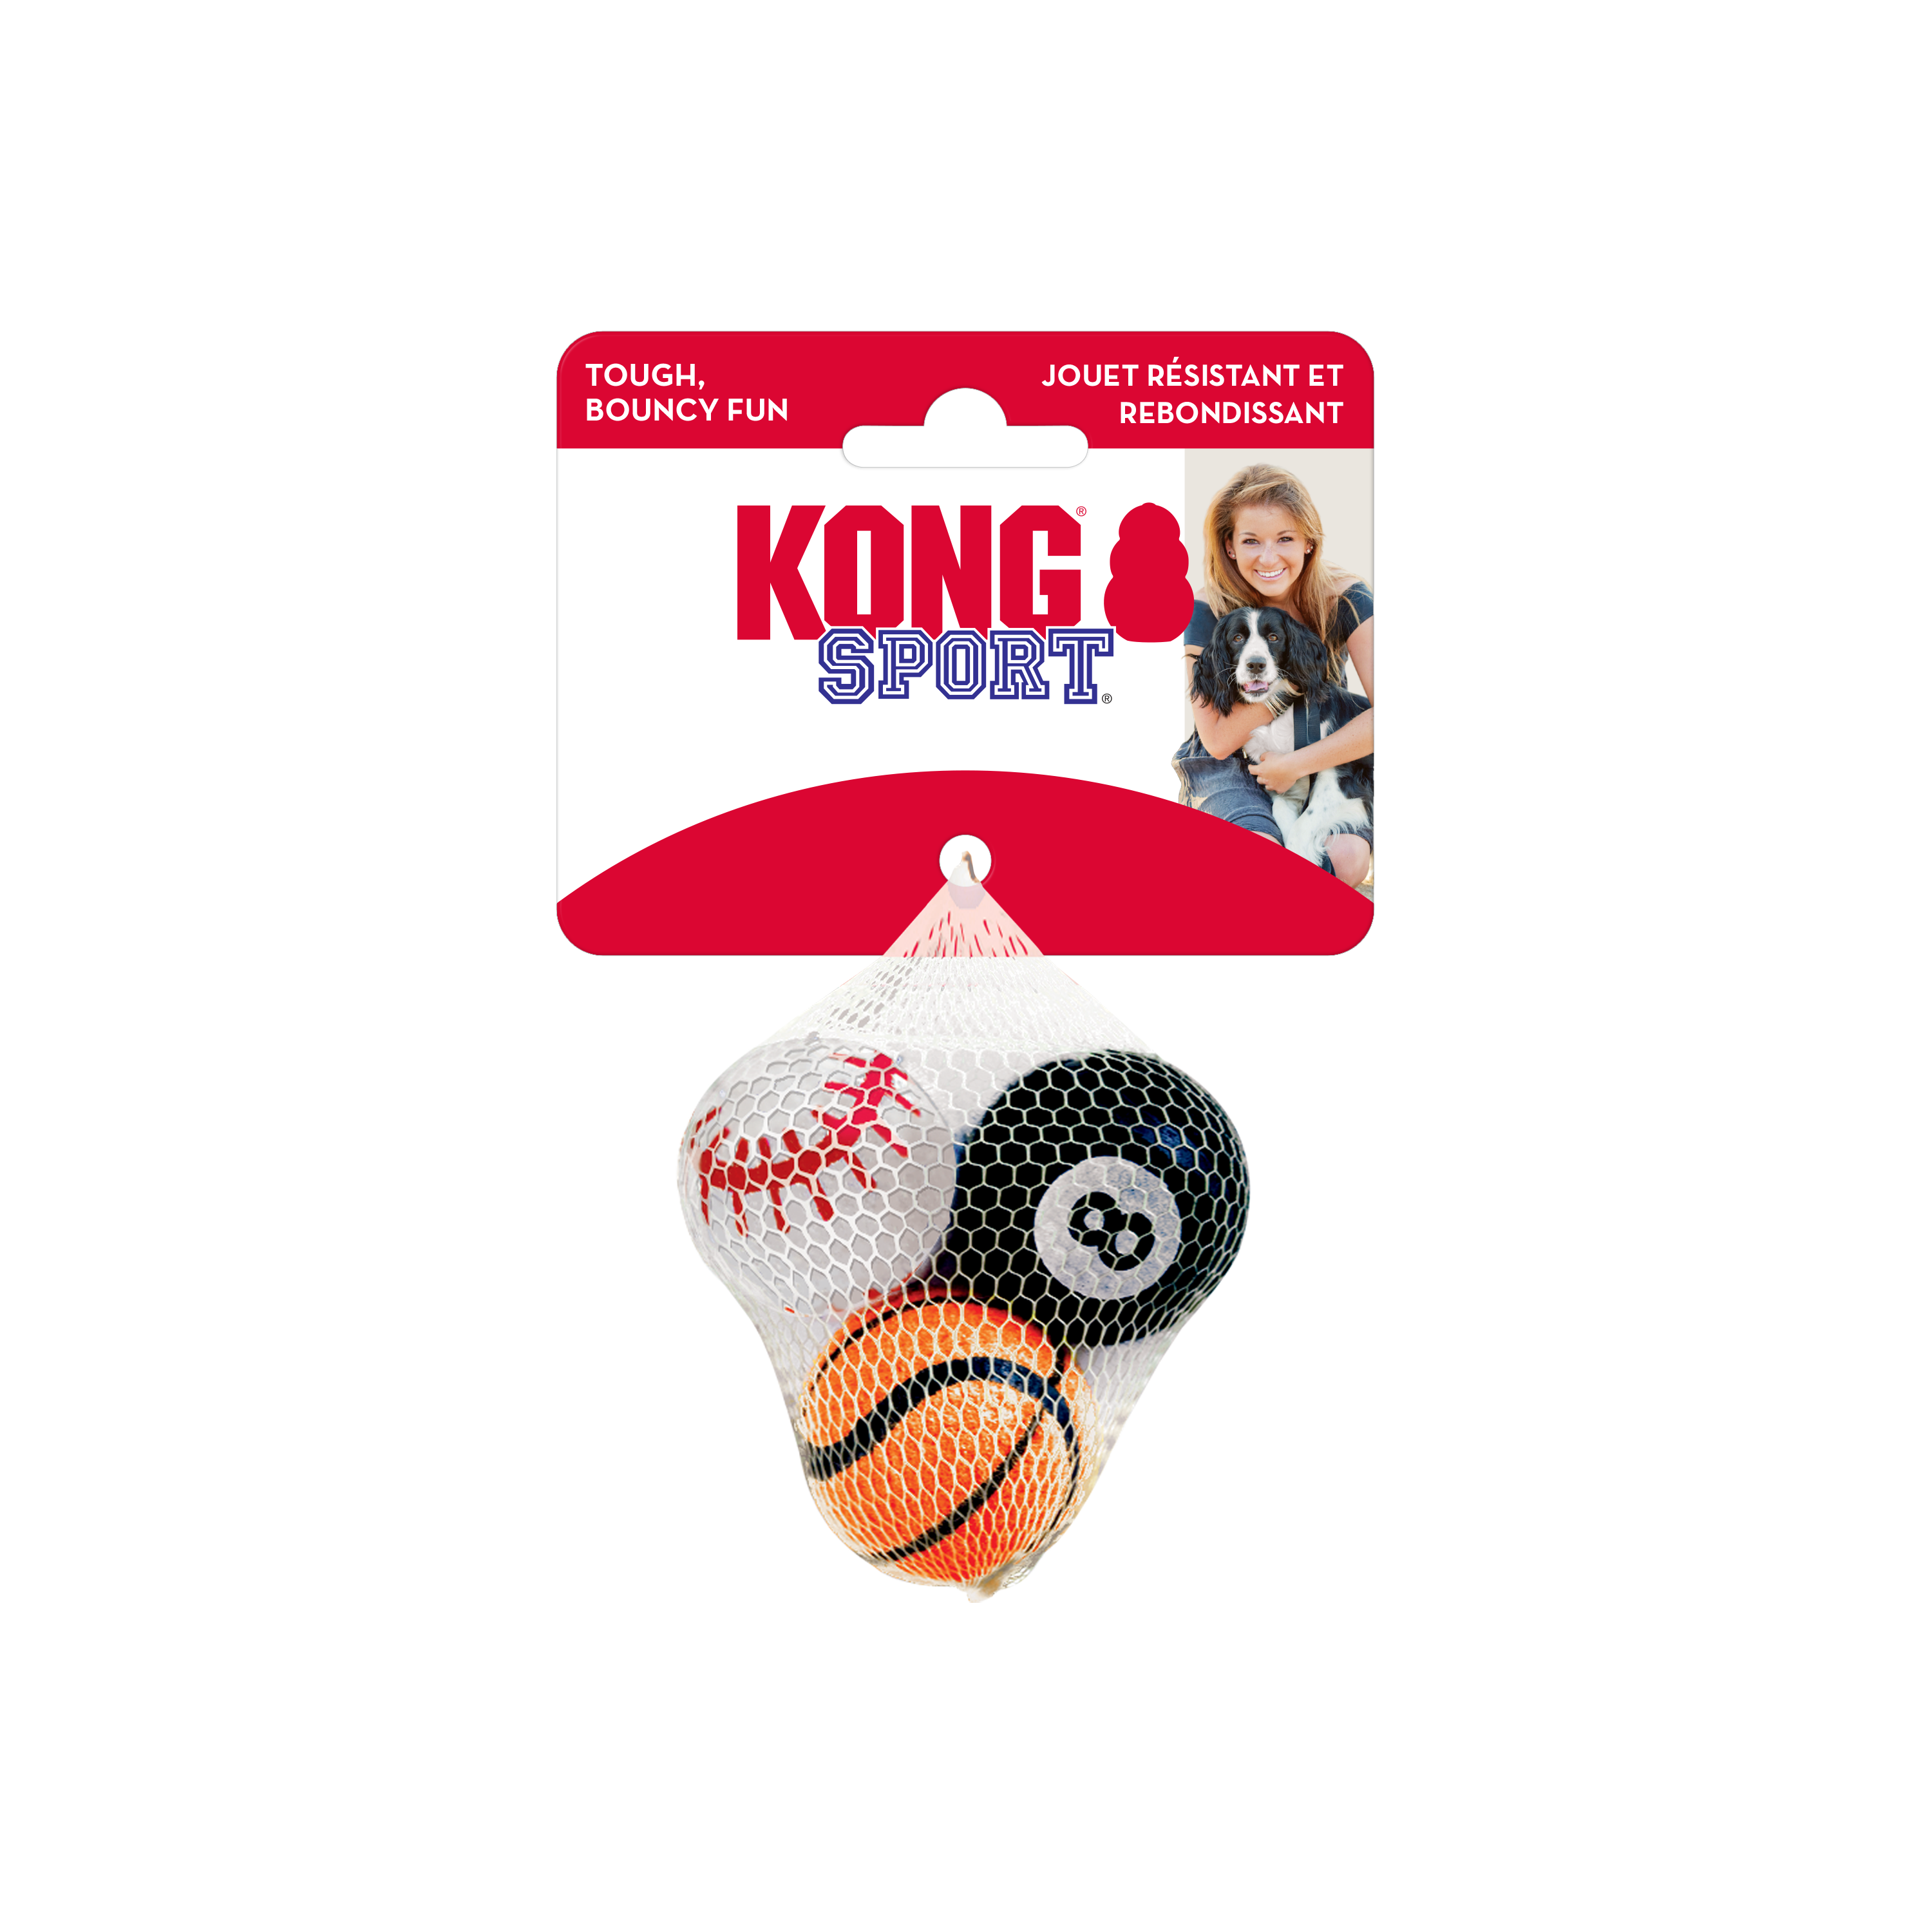 Sportballen 3-pk onpack product afbeelding